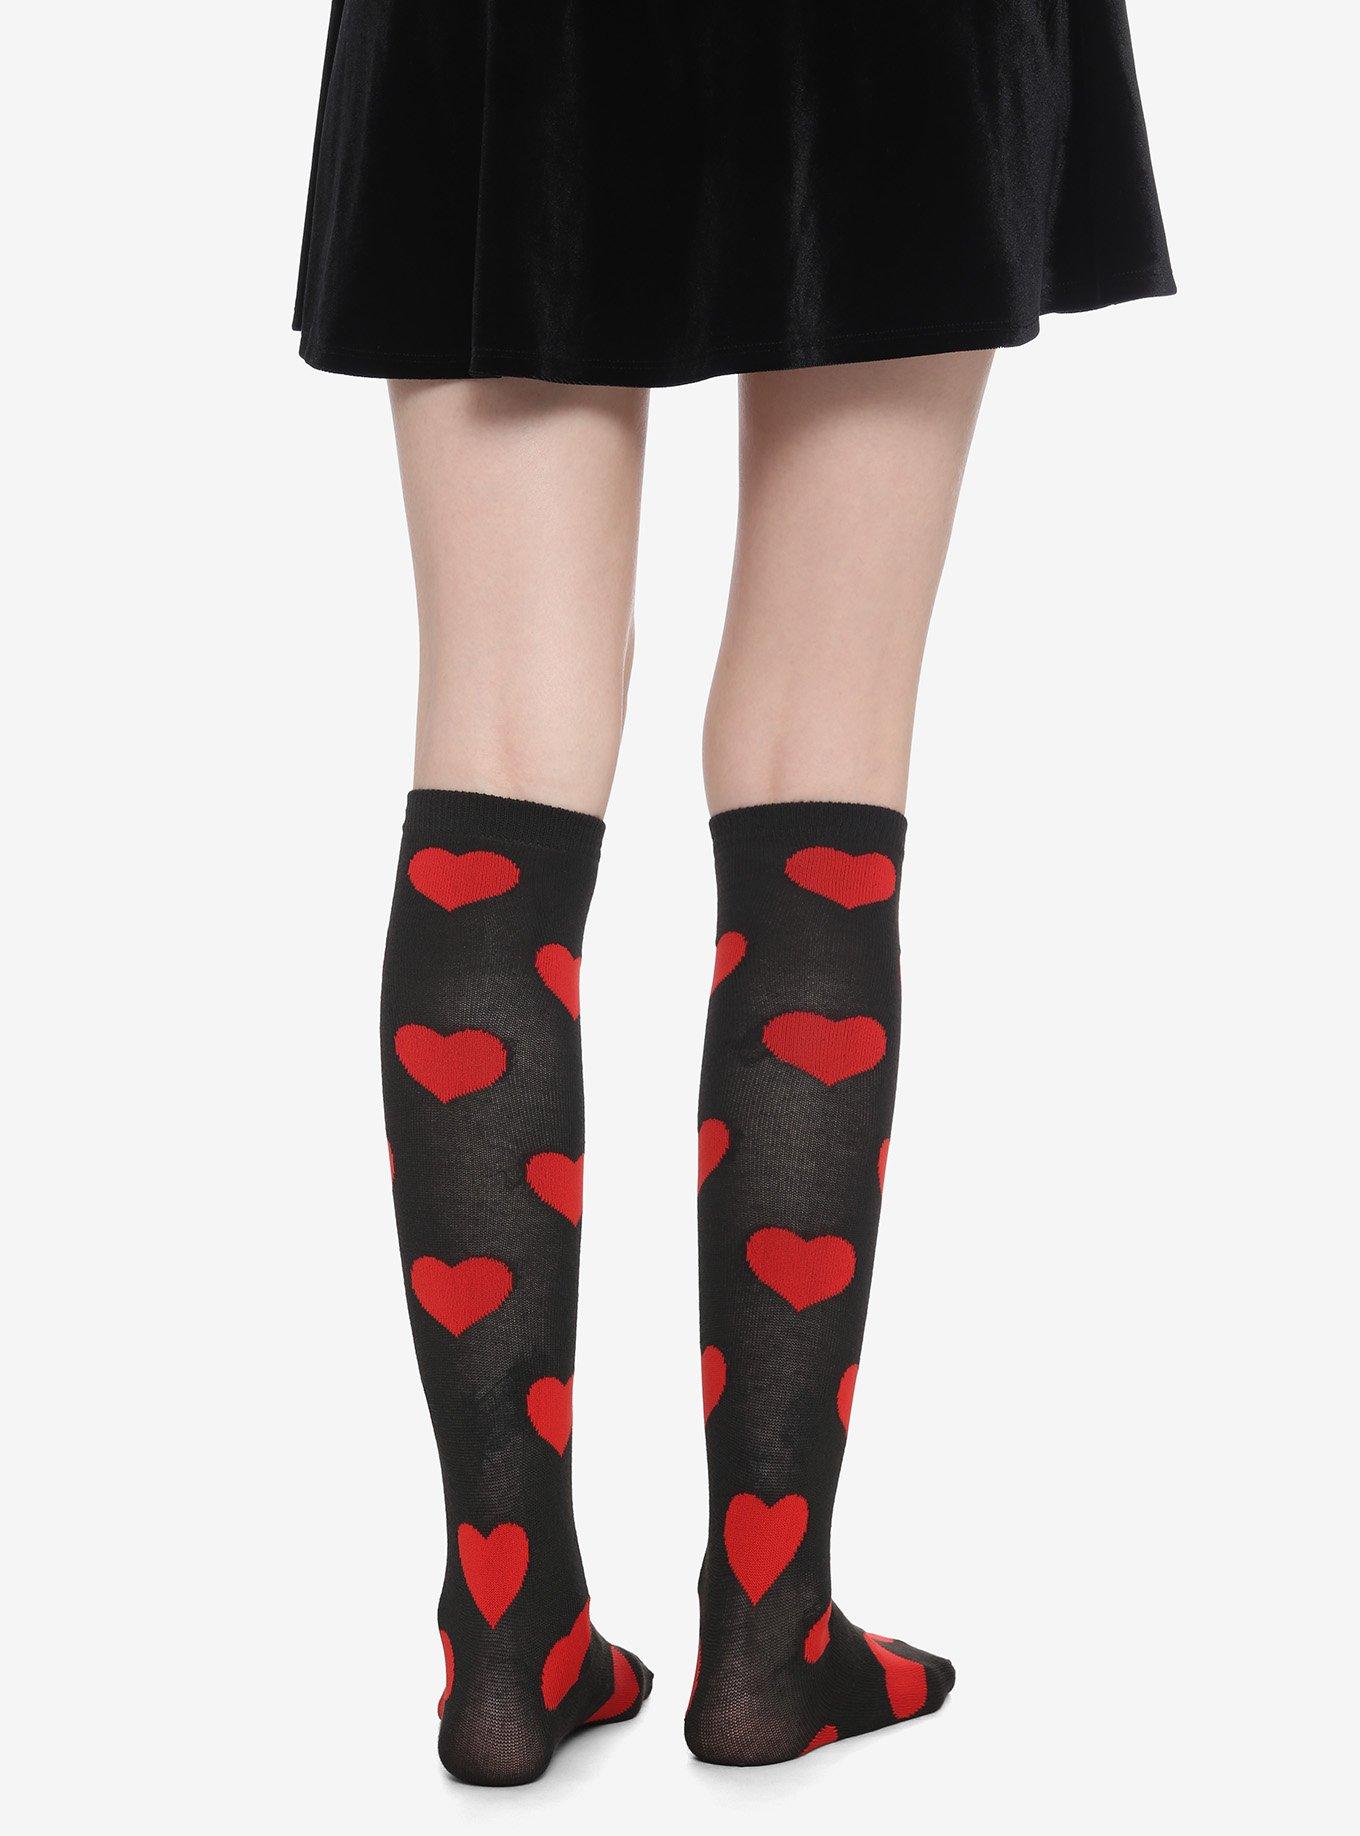 Black & Red Heart Knee-High Socks, , alternate